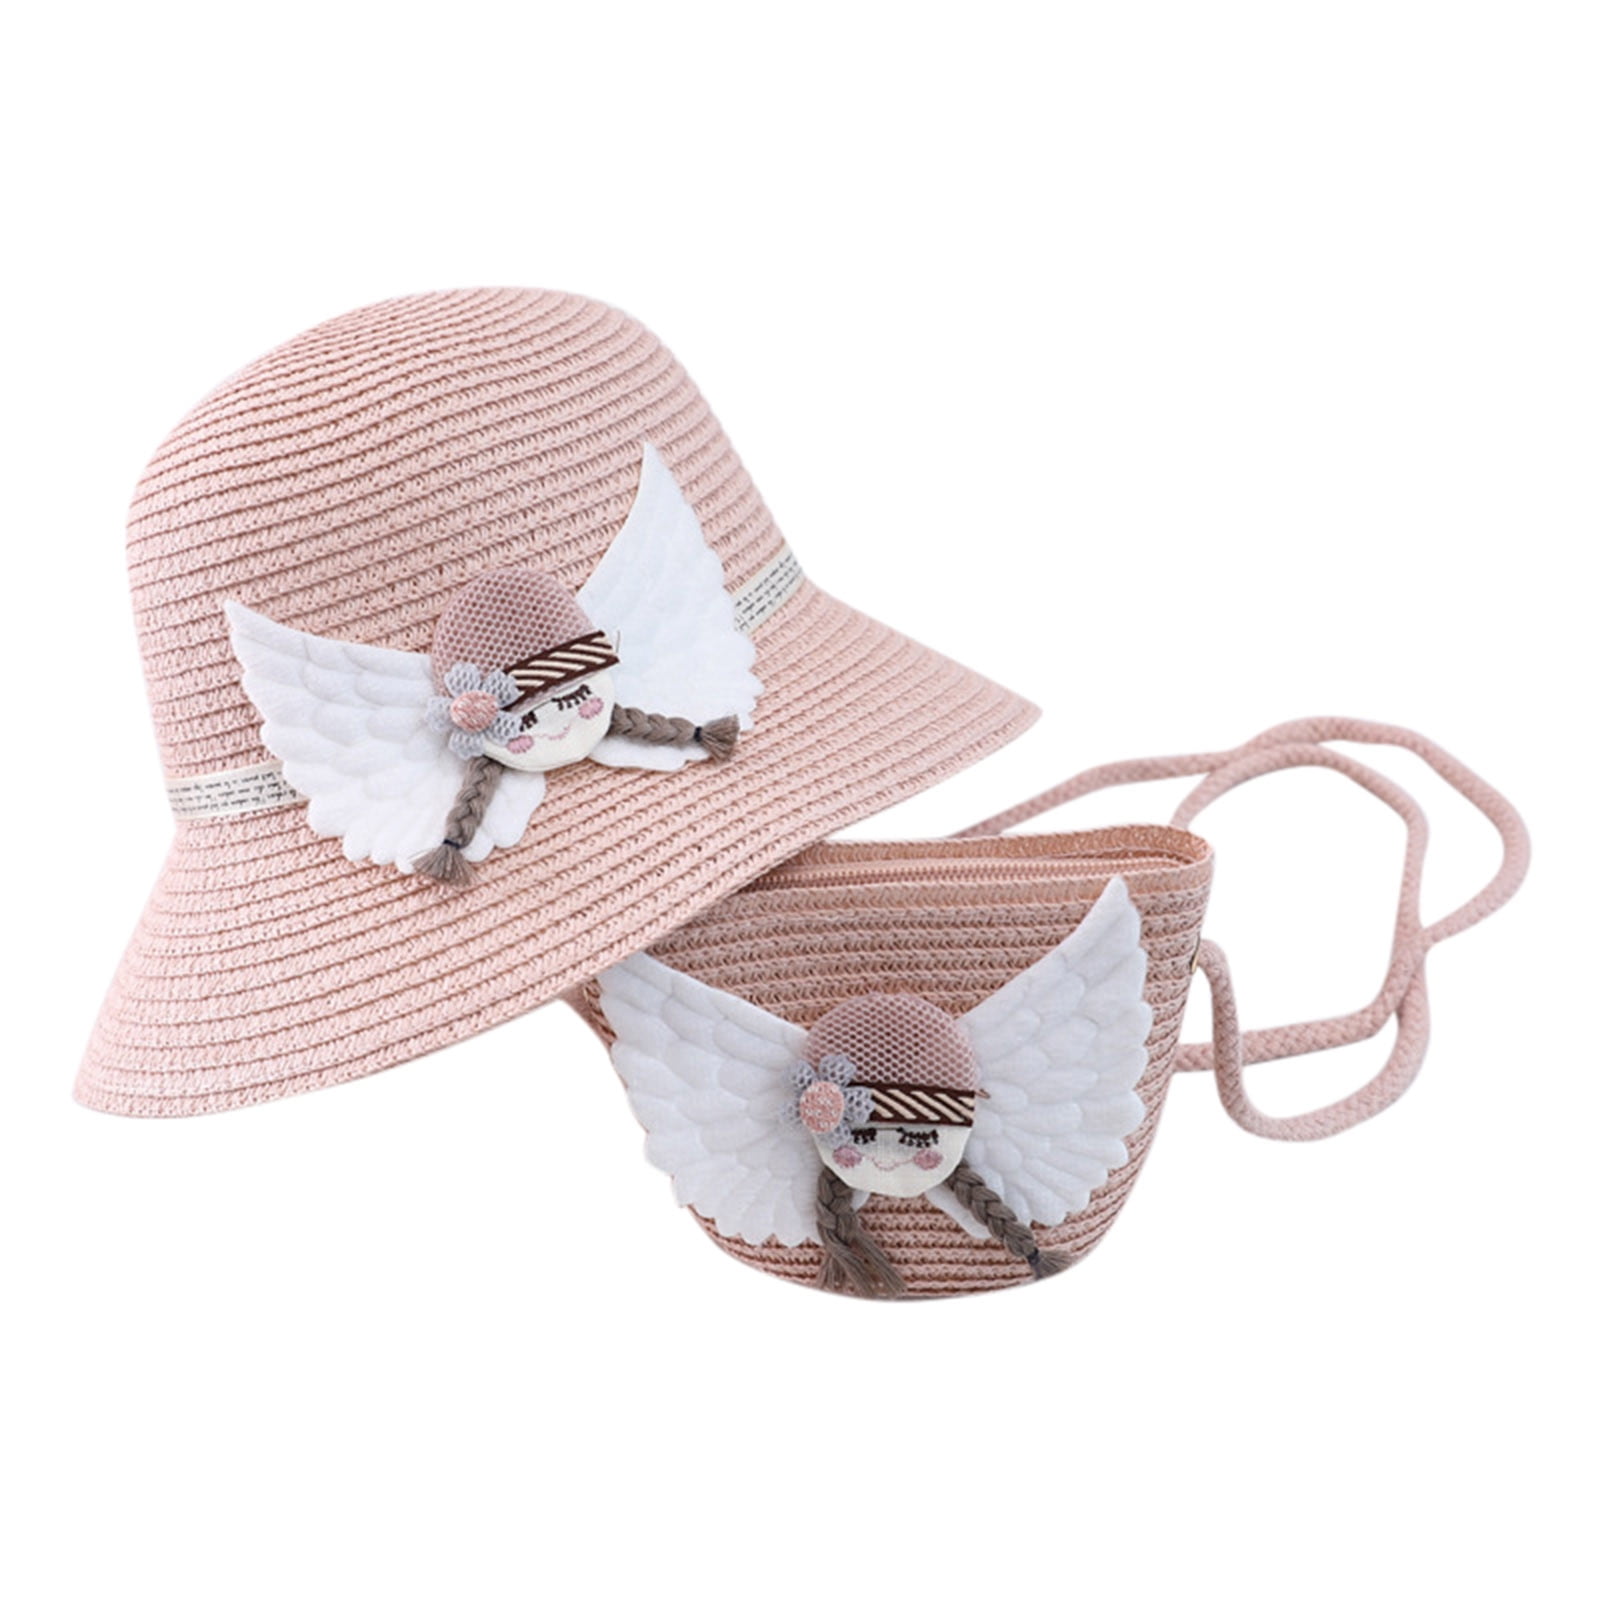 Superora Sun Hat Toddler Girls Beach Hat Baby Cartoon Flat Adjustable Cotton Blend 2 Way to Wear